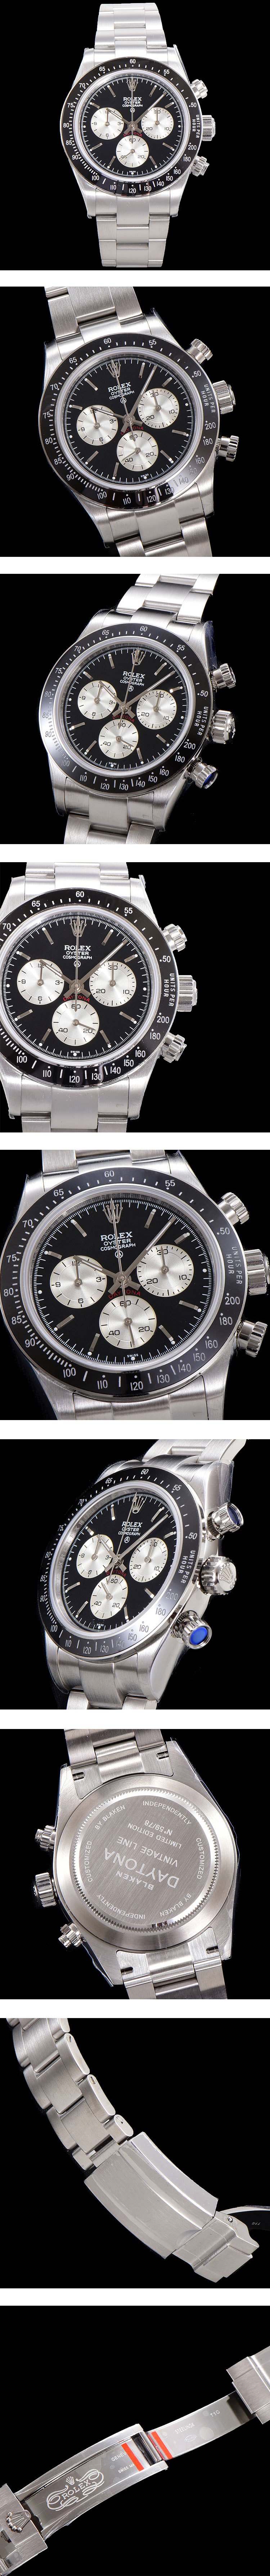 ロレックス 旧型デイトナ・自動巻き Ref.6263 ブラック BLAKEN高級改装スーパーコピー時計